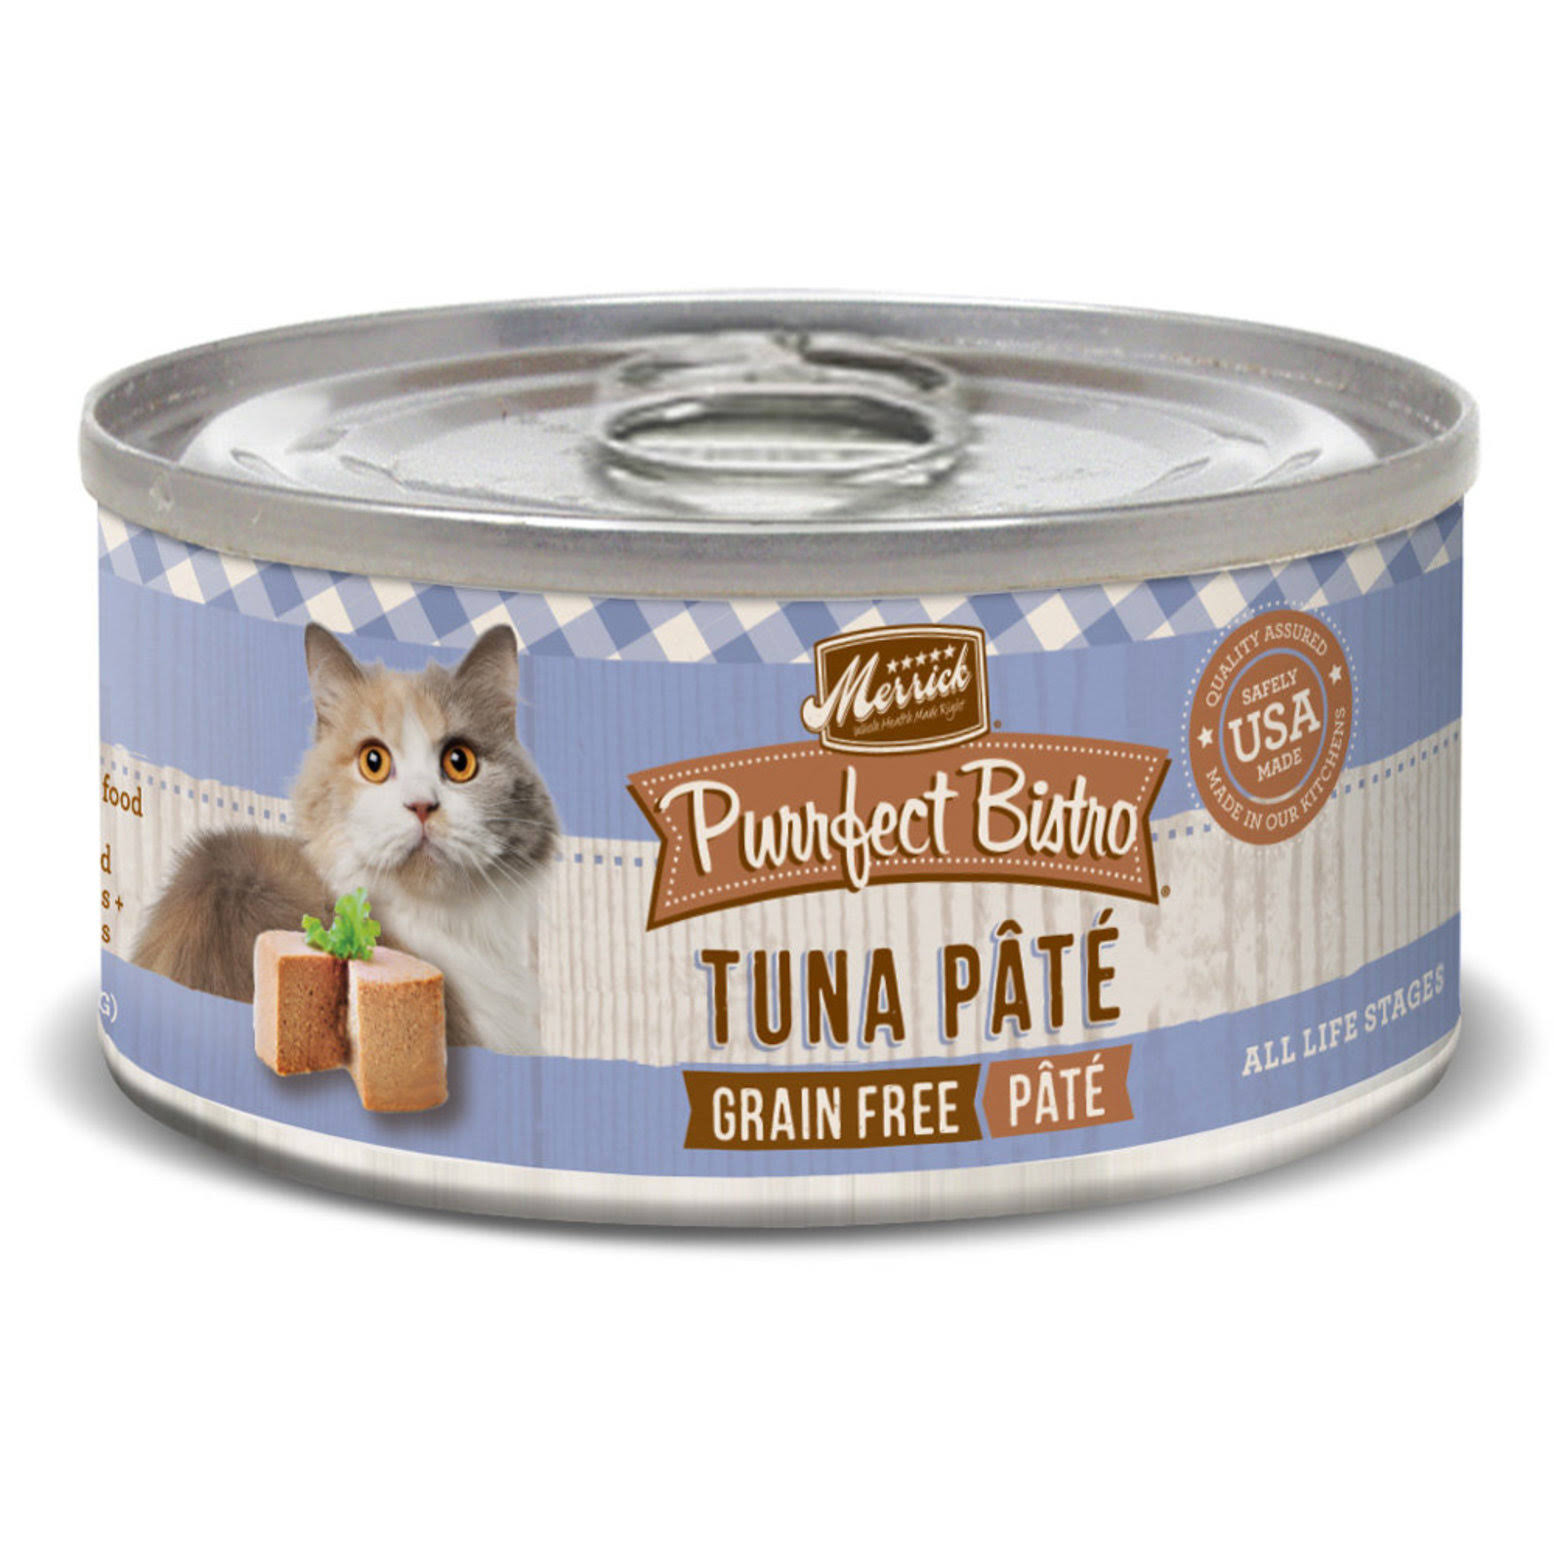 Merrick Purrfect Bistro Cat Food - Tuna Pate, 156g